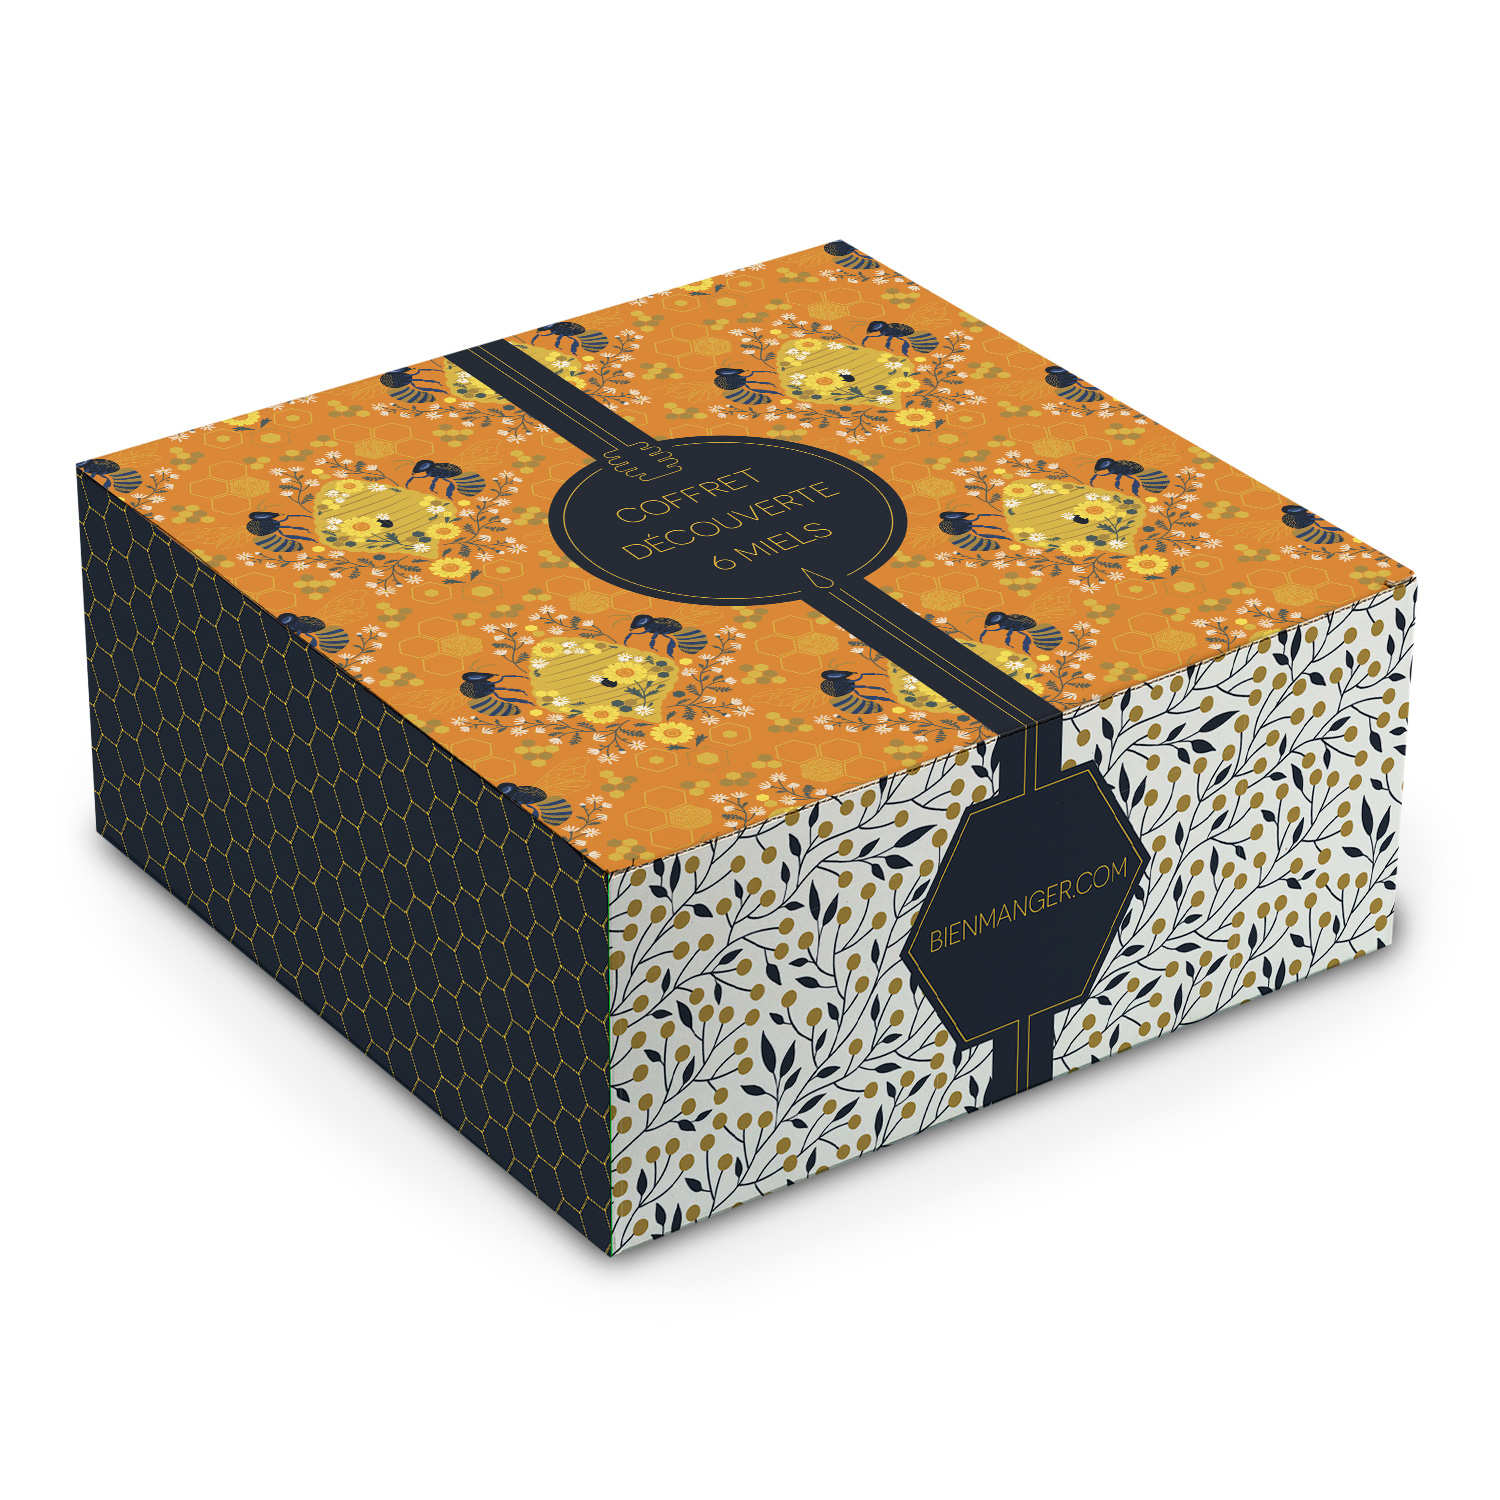 45273 0w0h0 Square Gift Box Small Model Miel Design 